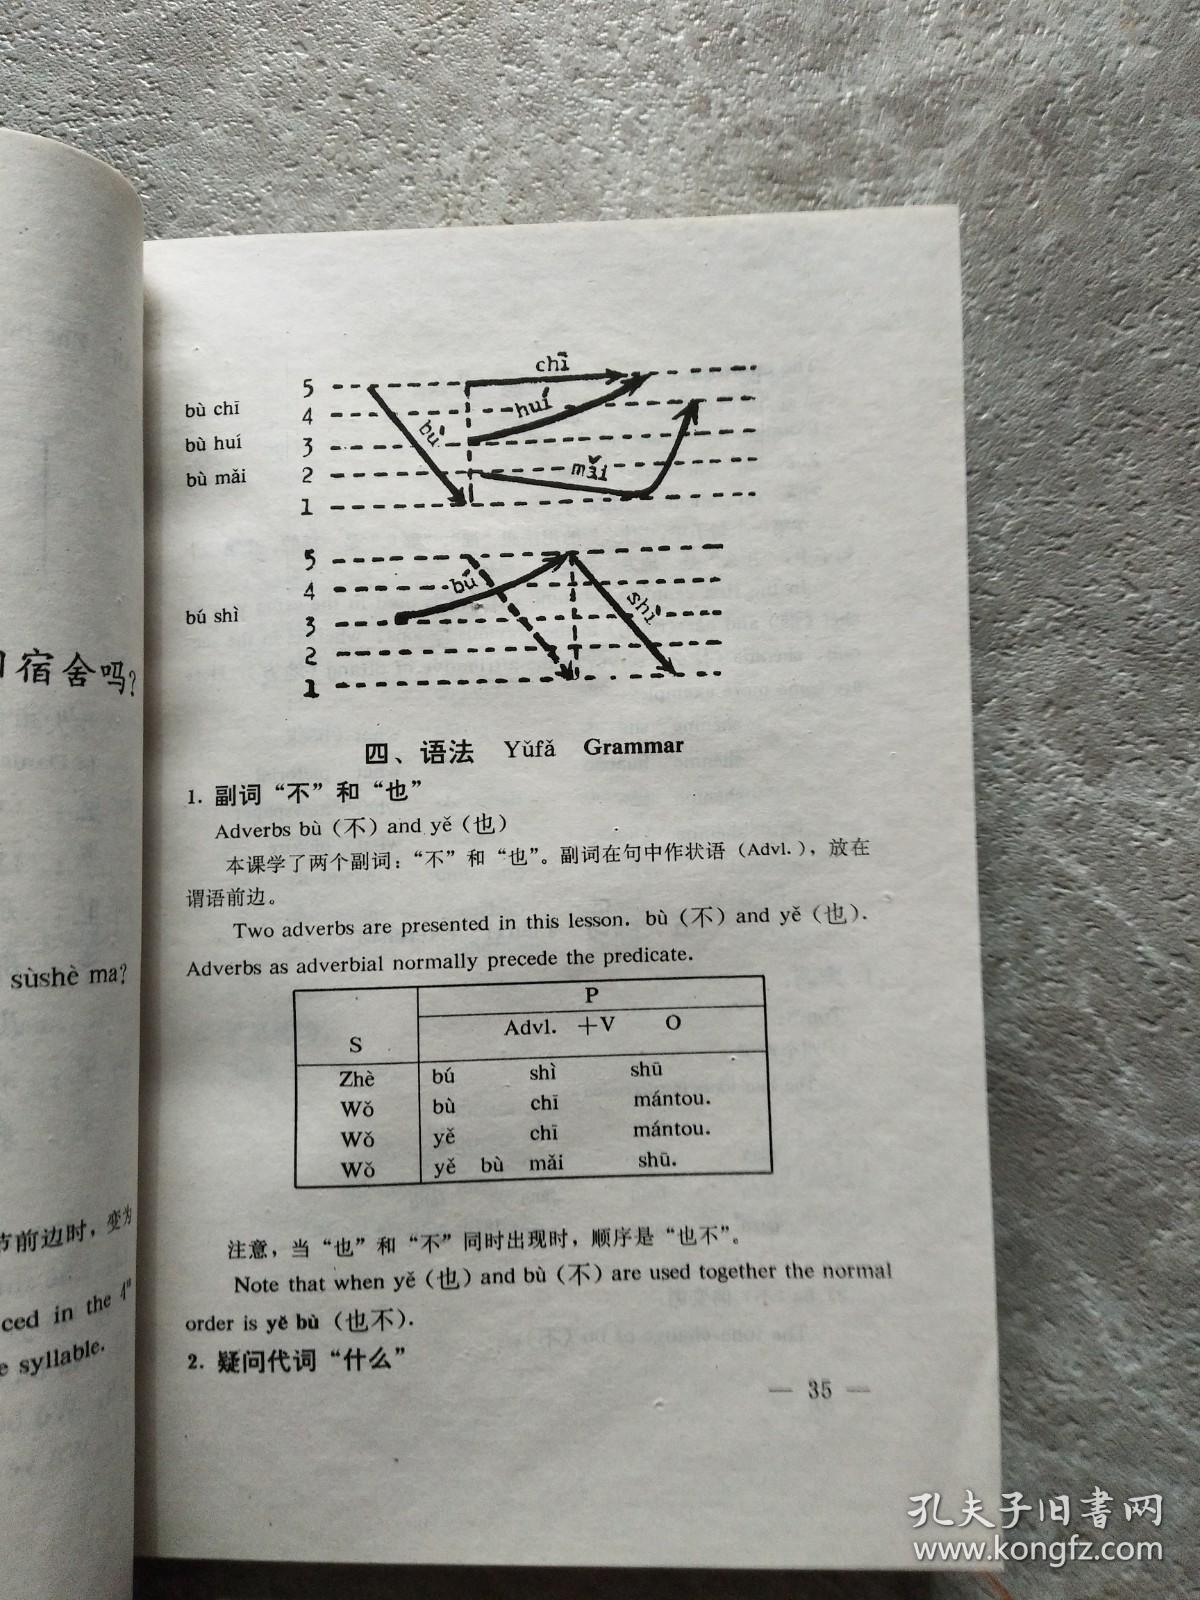 初级汉语课本：1、第二版 1-2【2本合售】